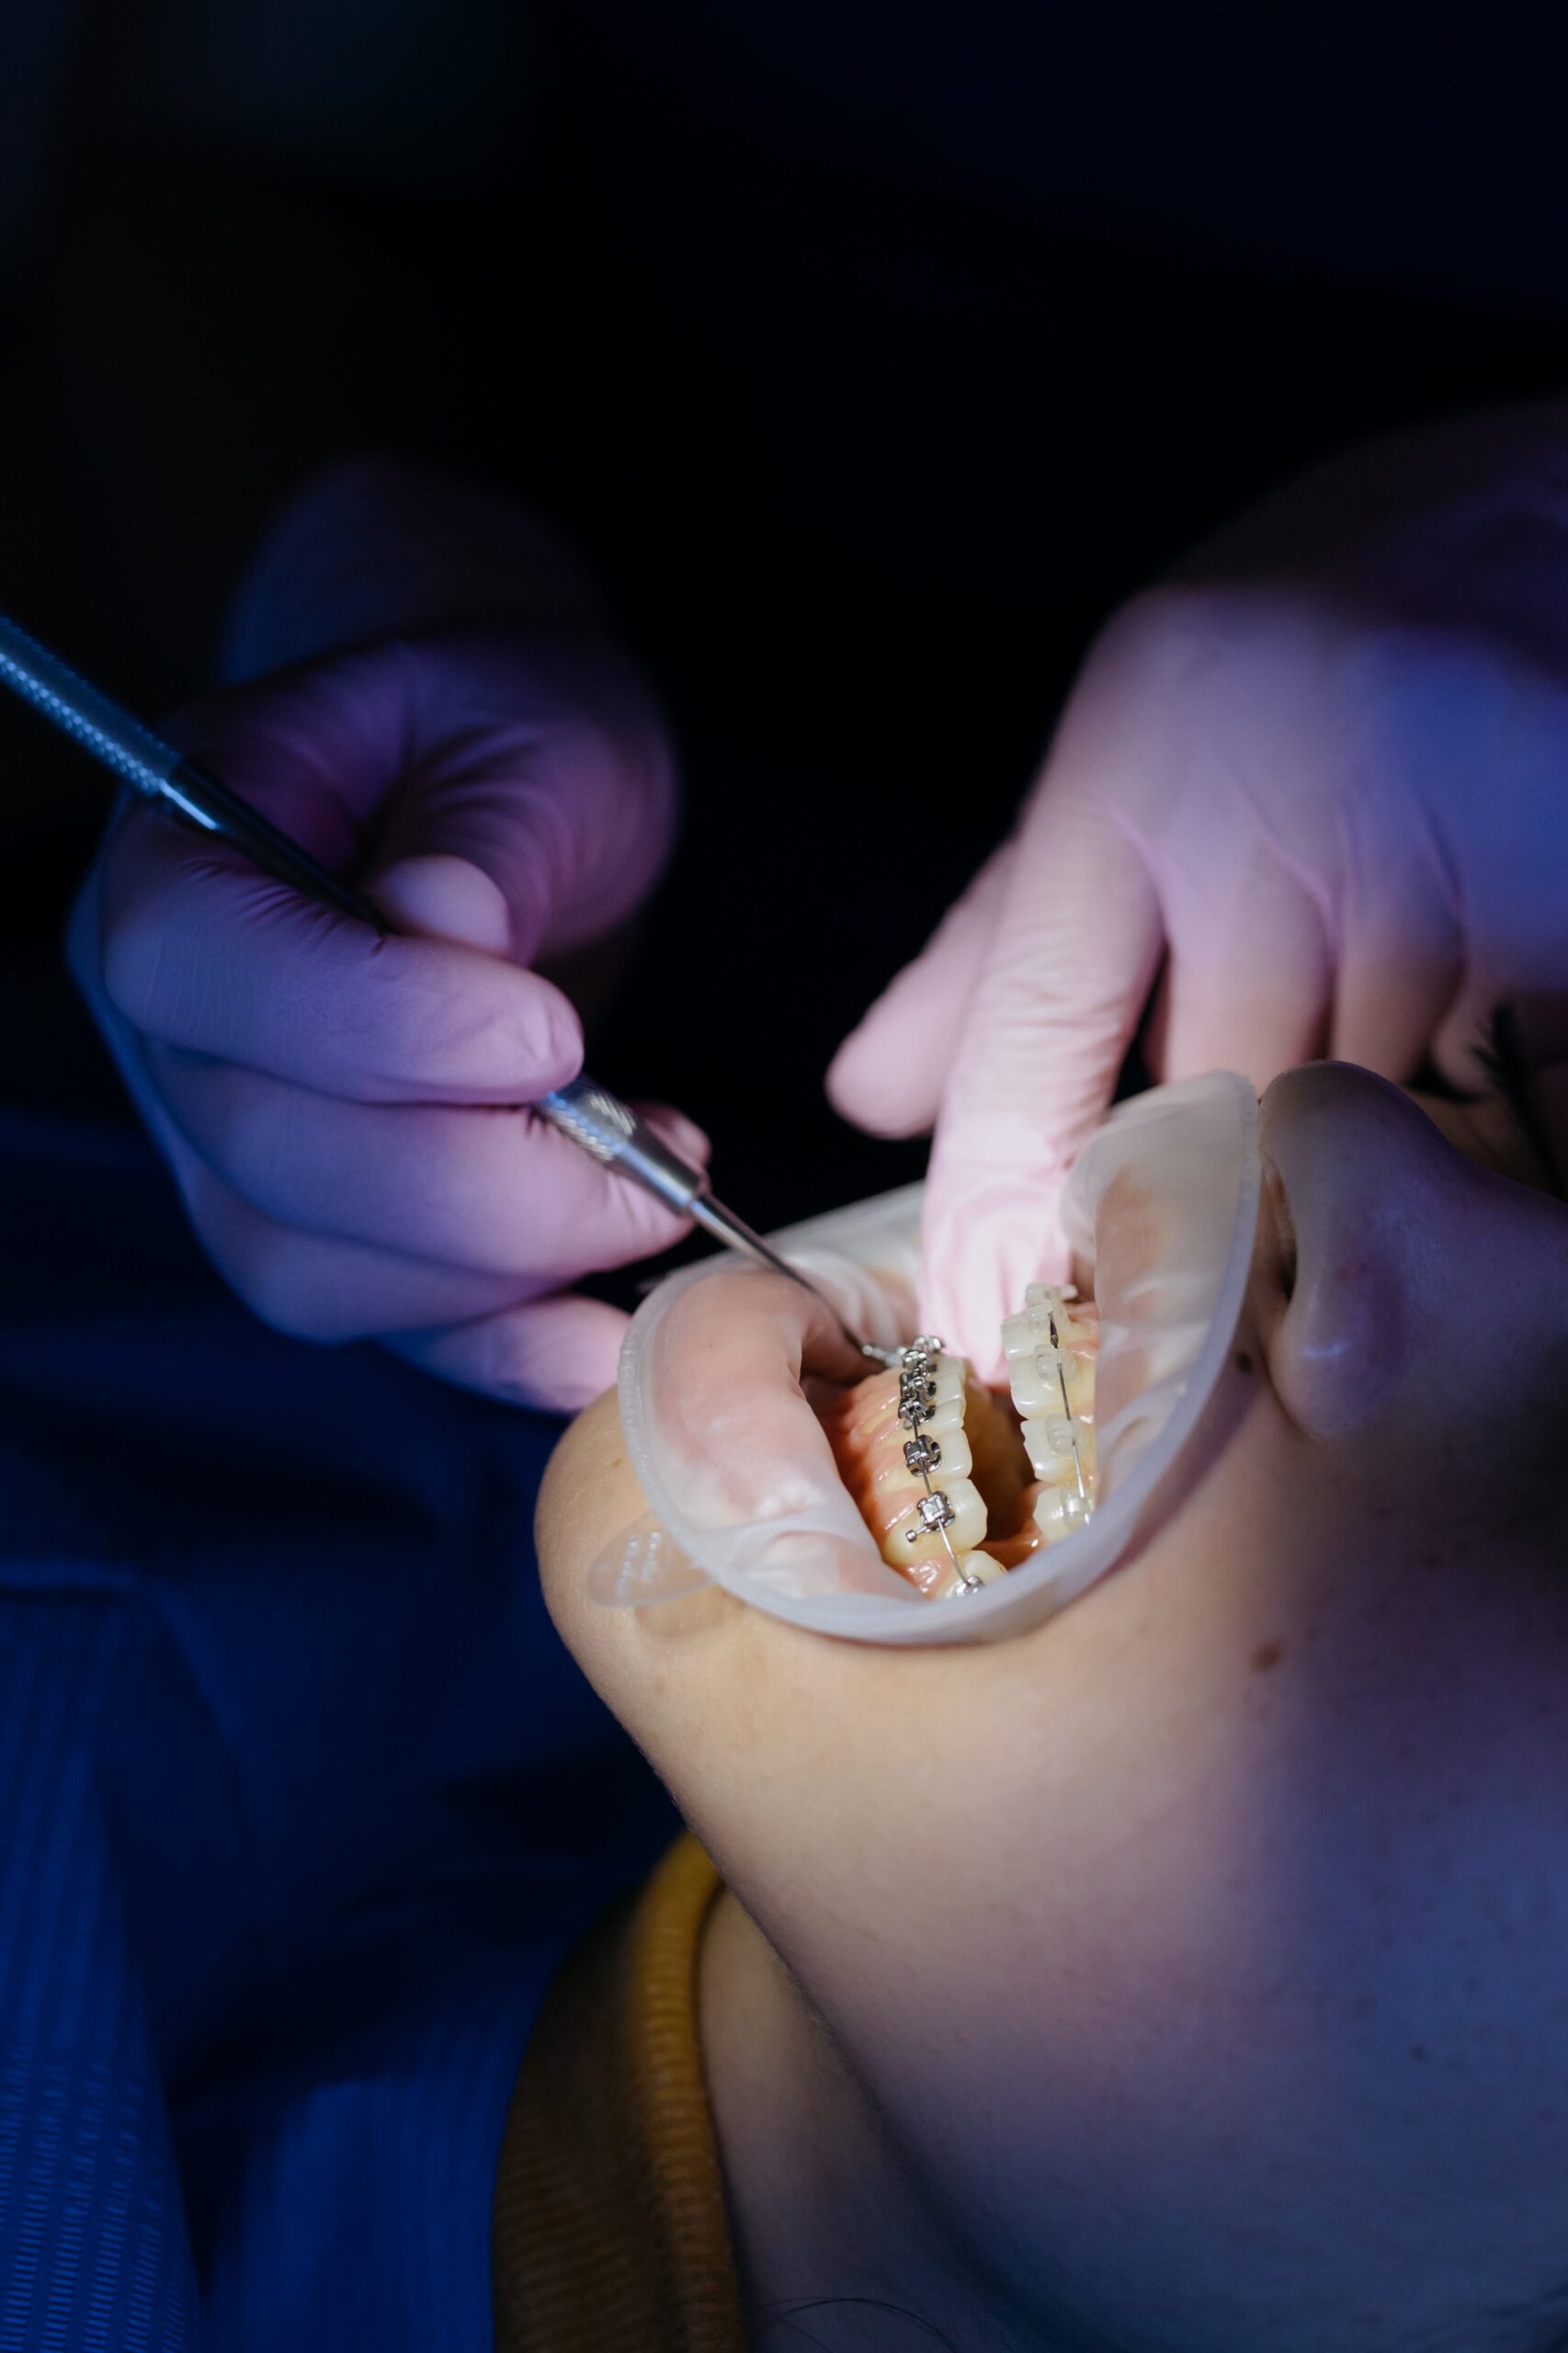 Aparaty ortodontyczne – leczenie wad zgryzu